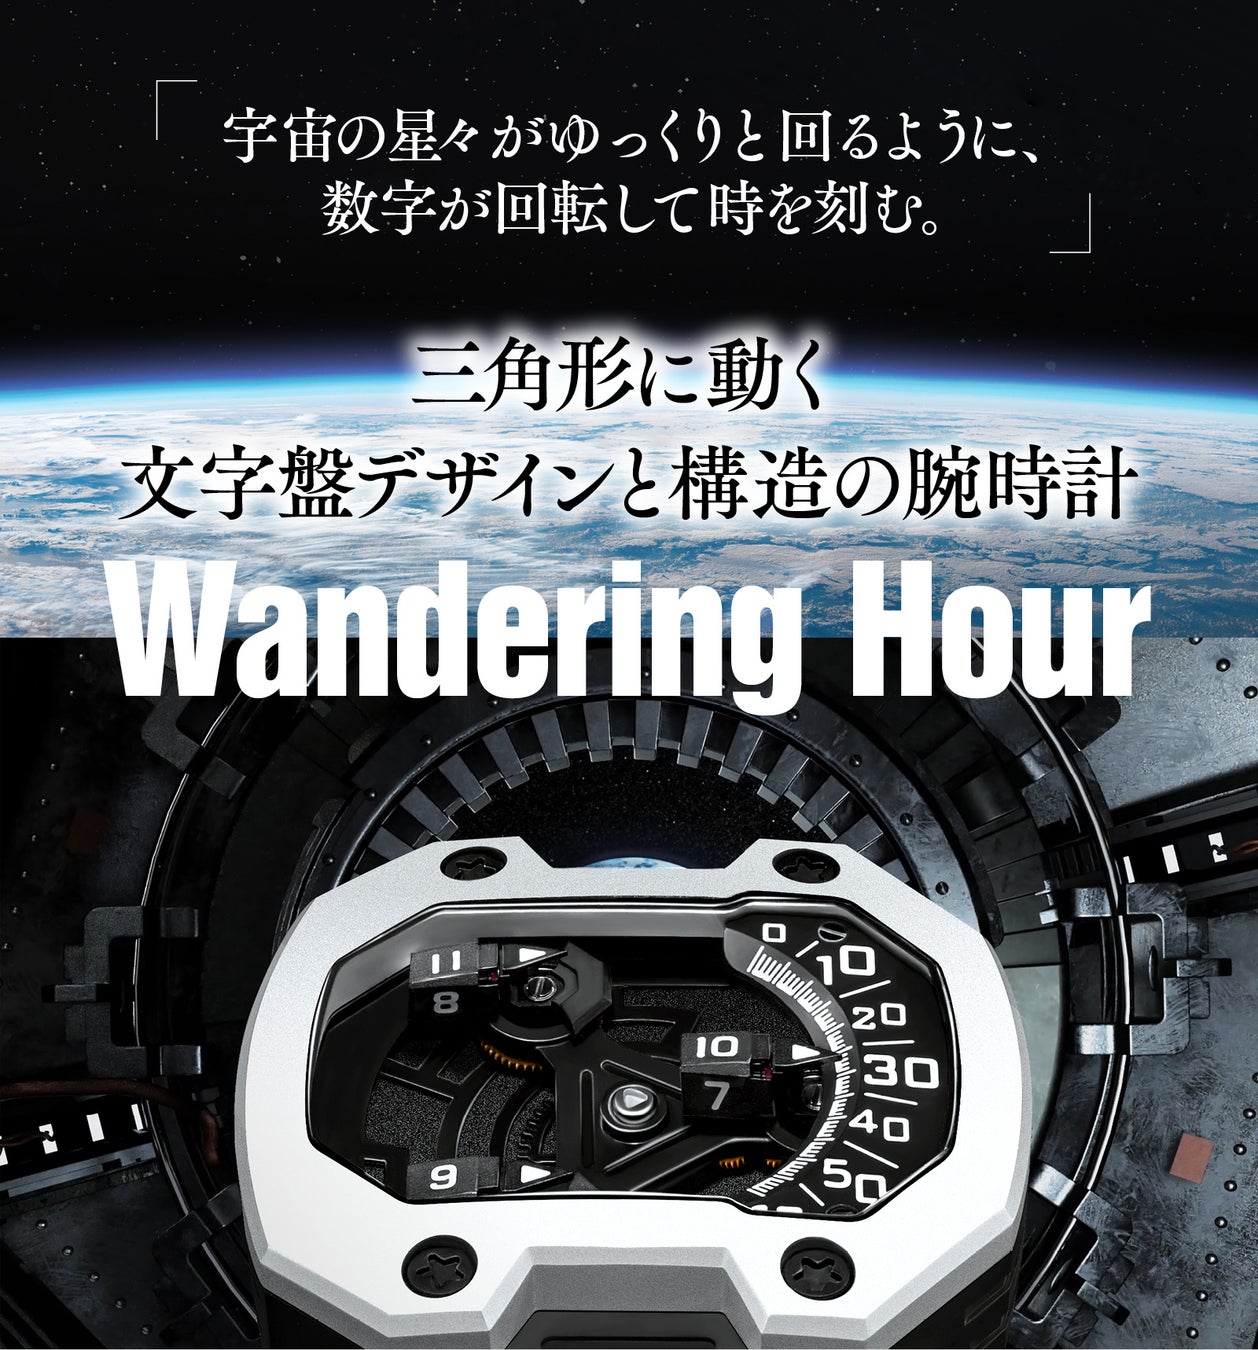 職人技×前衛デザイン。星のように時間を刻む腕時計「Wandering Hour」